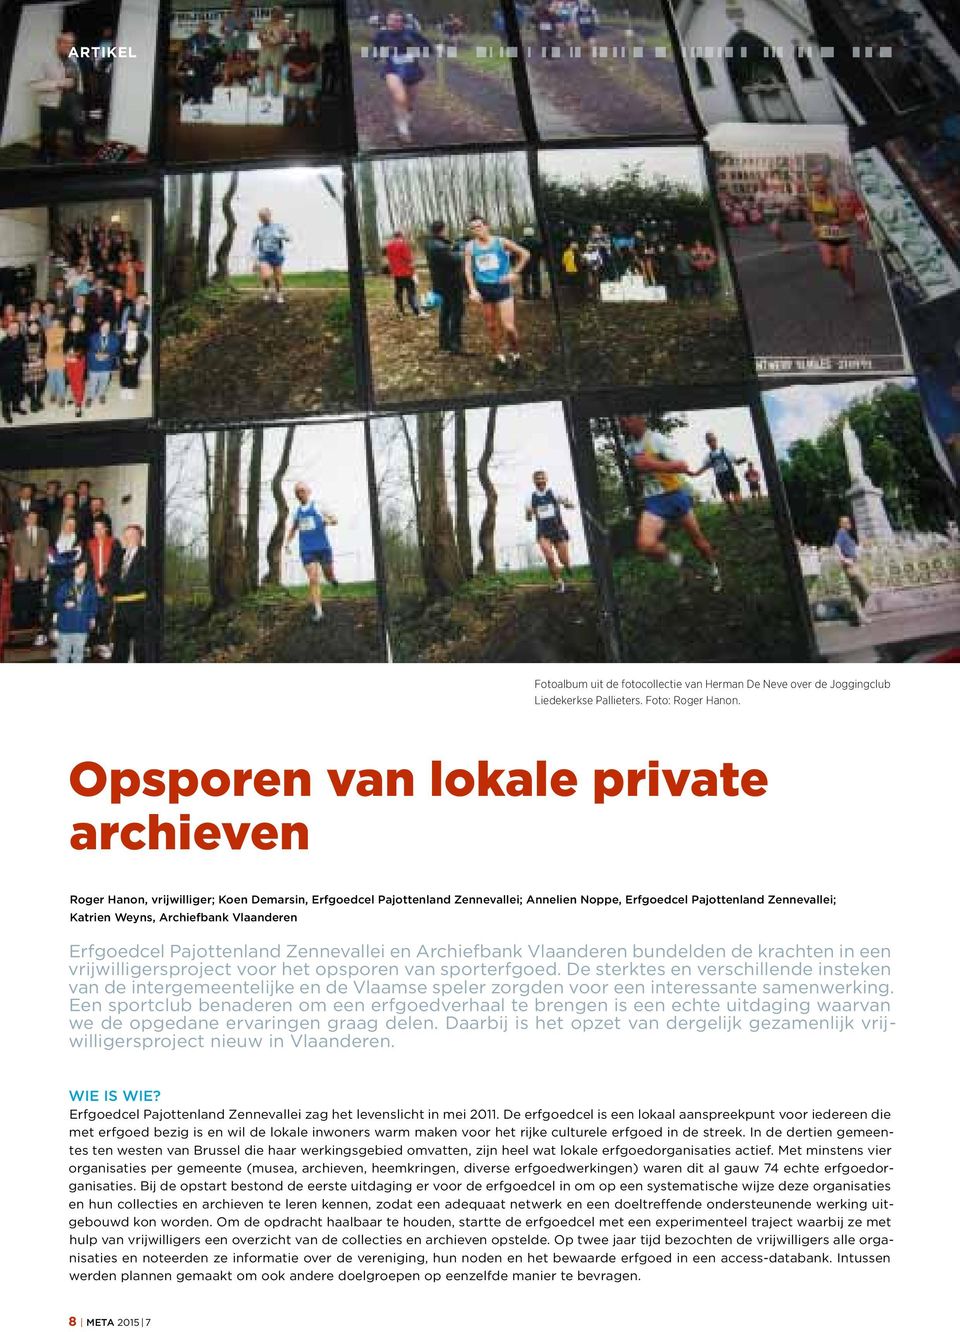 Vlaanderen Erfgoedcel Pajottenland Zennevallei en Archiefbank Vlaanderen bundelden de krachten in een vrijwilligersproject voor het opsporen van sporterfgoed.